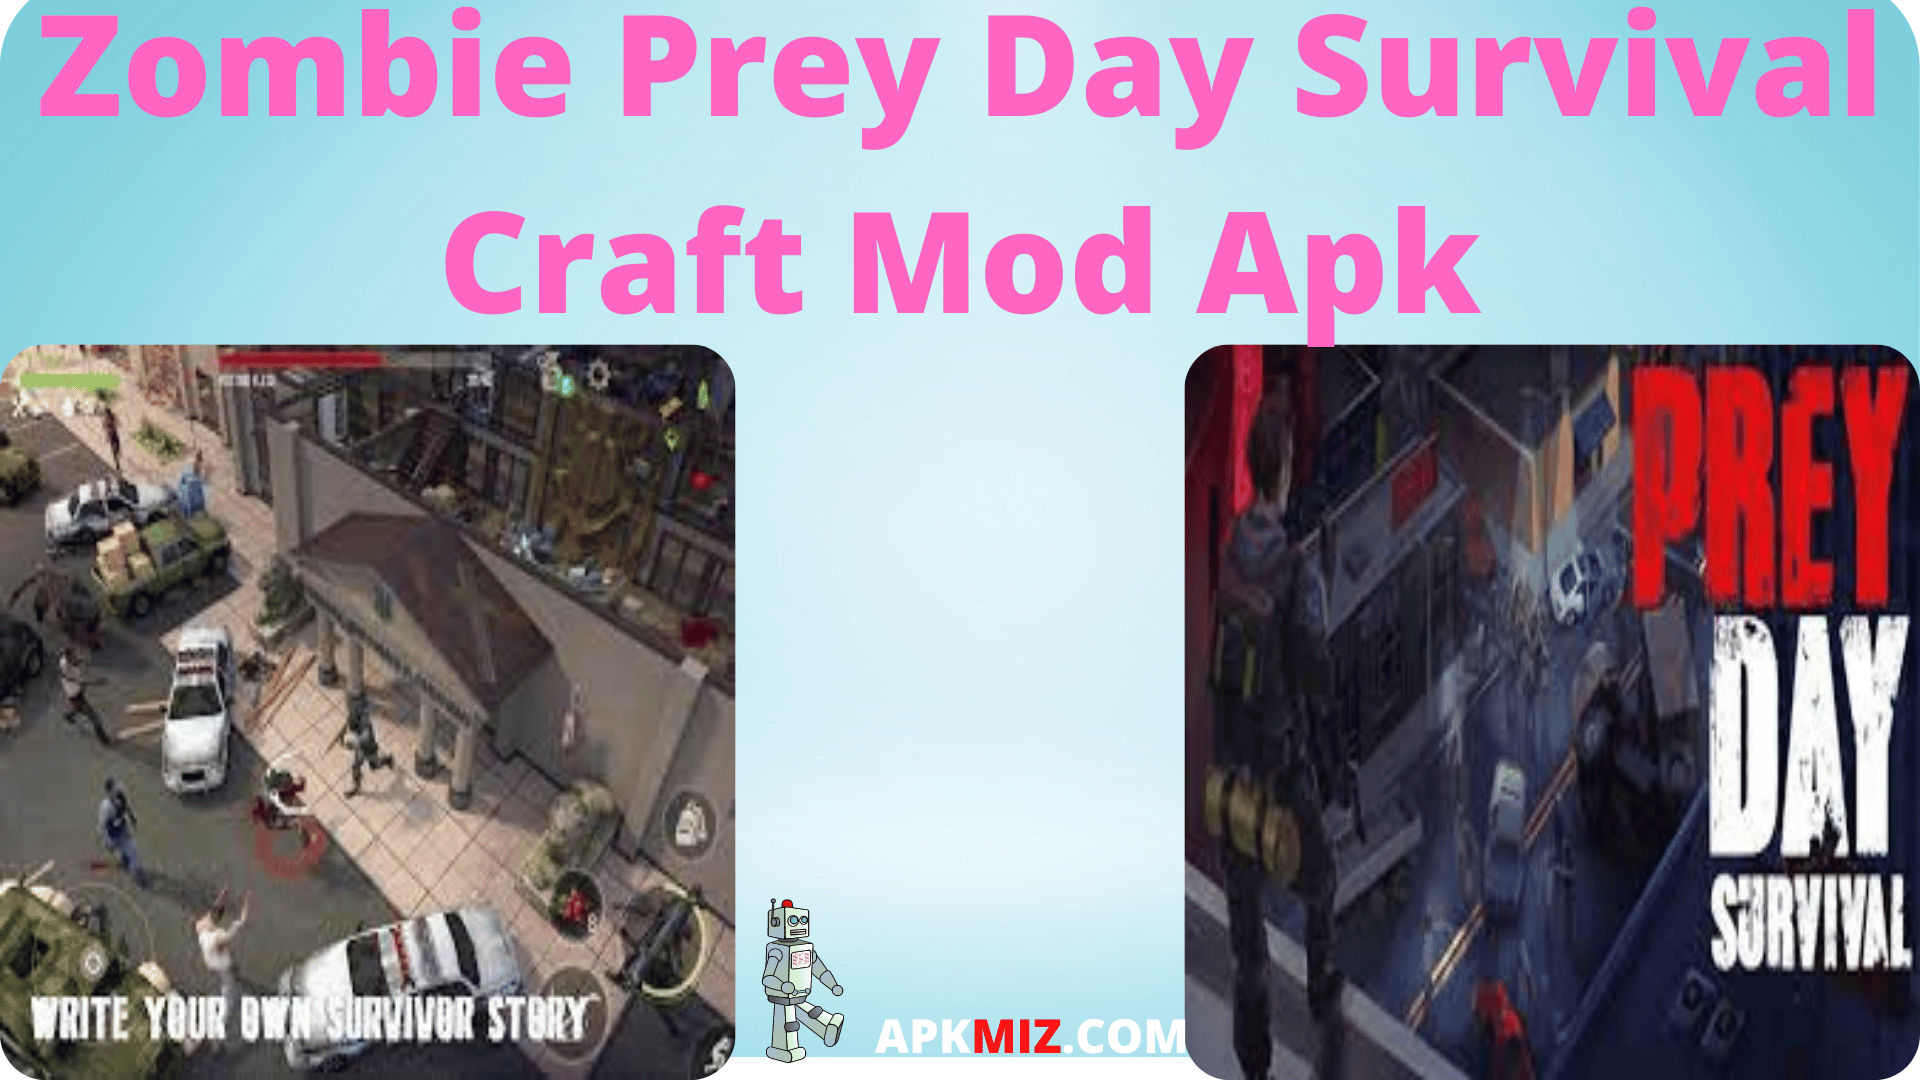 Zombie Prey Day Survival Craft Mod Apk